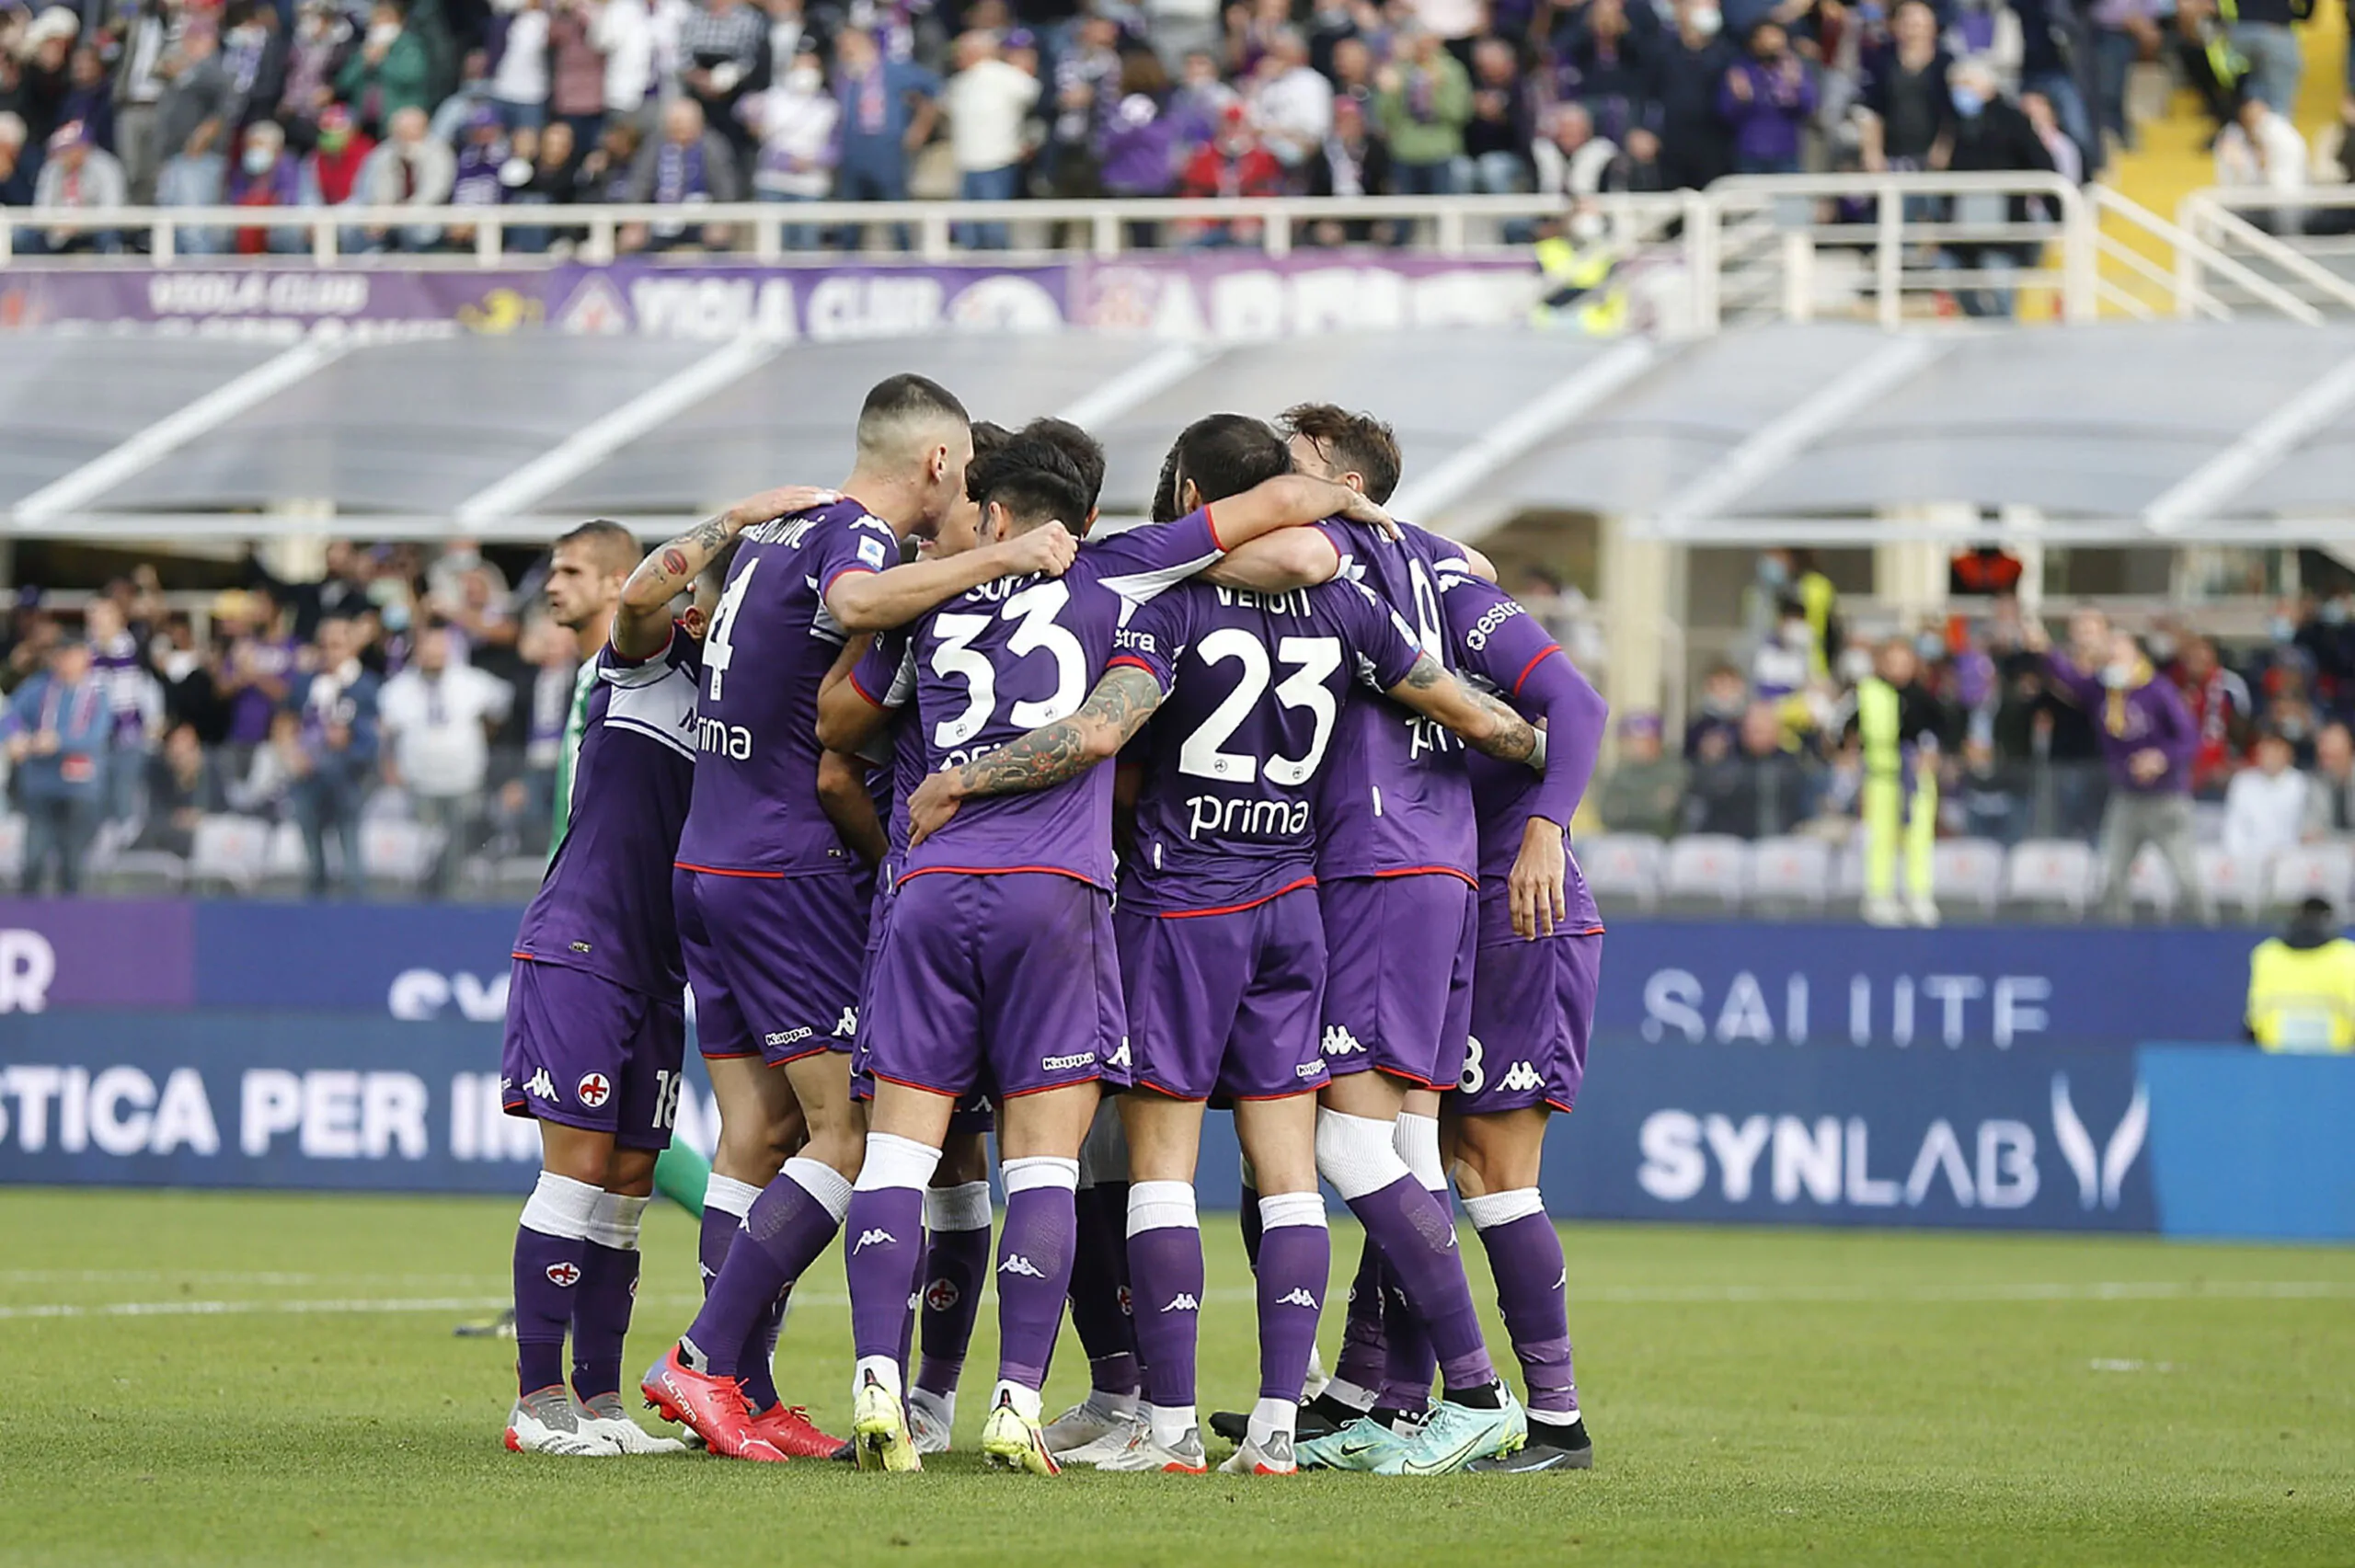 Fiorentina, vicinissimo il colpo in attacco: la chiusura nei prossimi giorni!